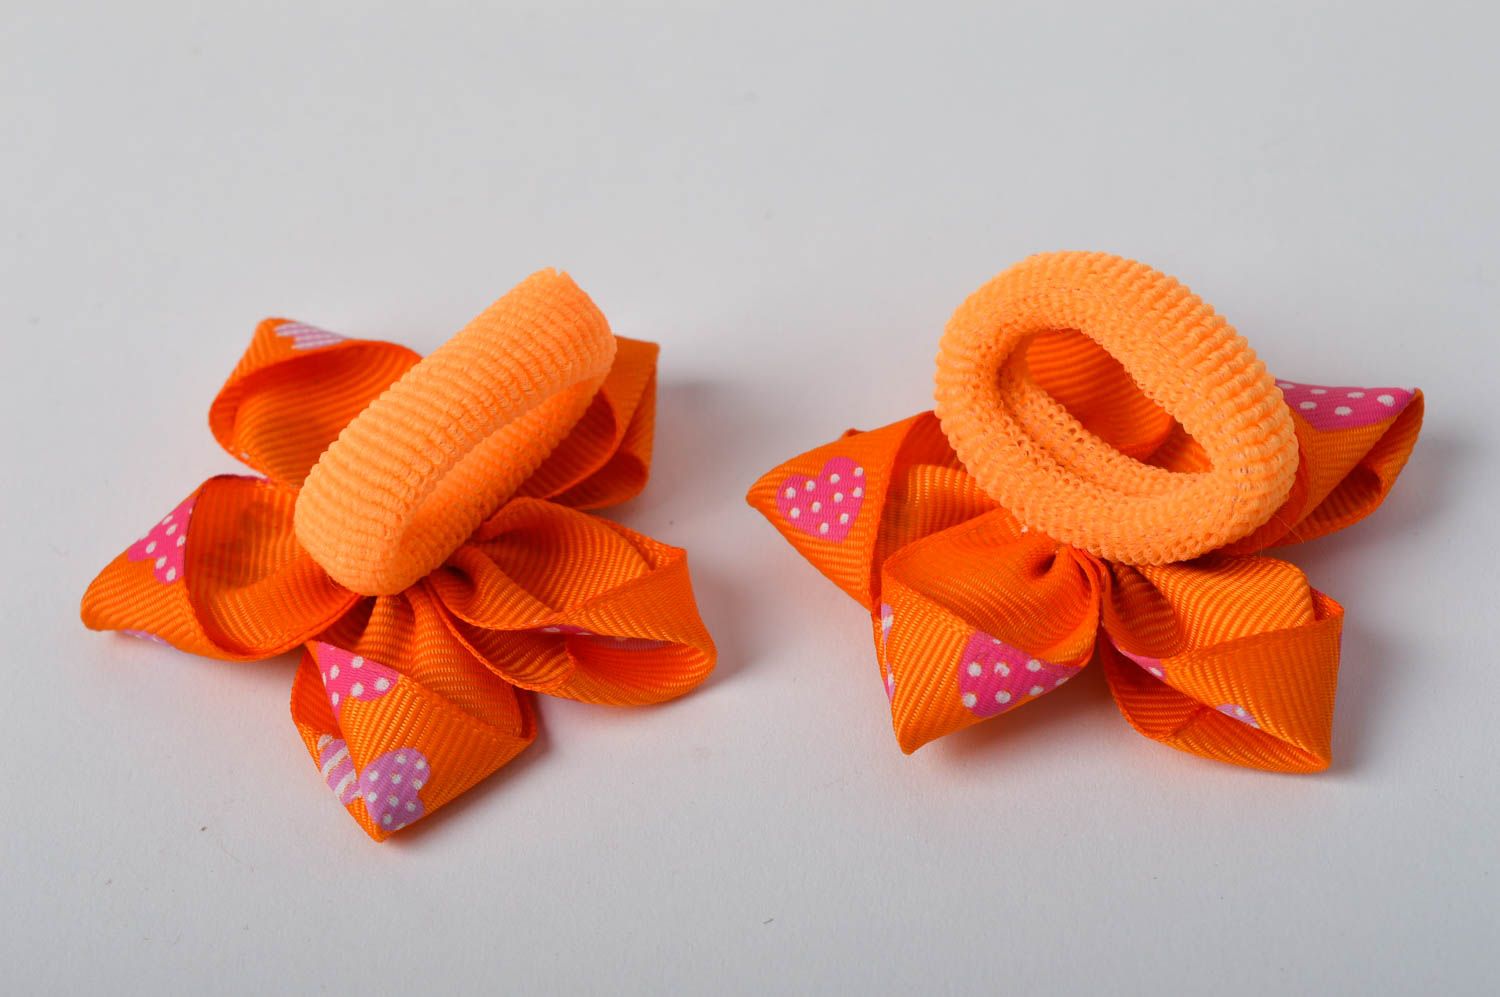 Handmade flower flower scrunchie 2 pieces childrens hair tie hair style ideas photo 5